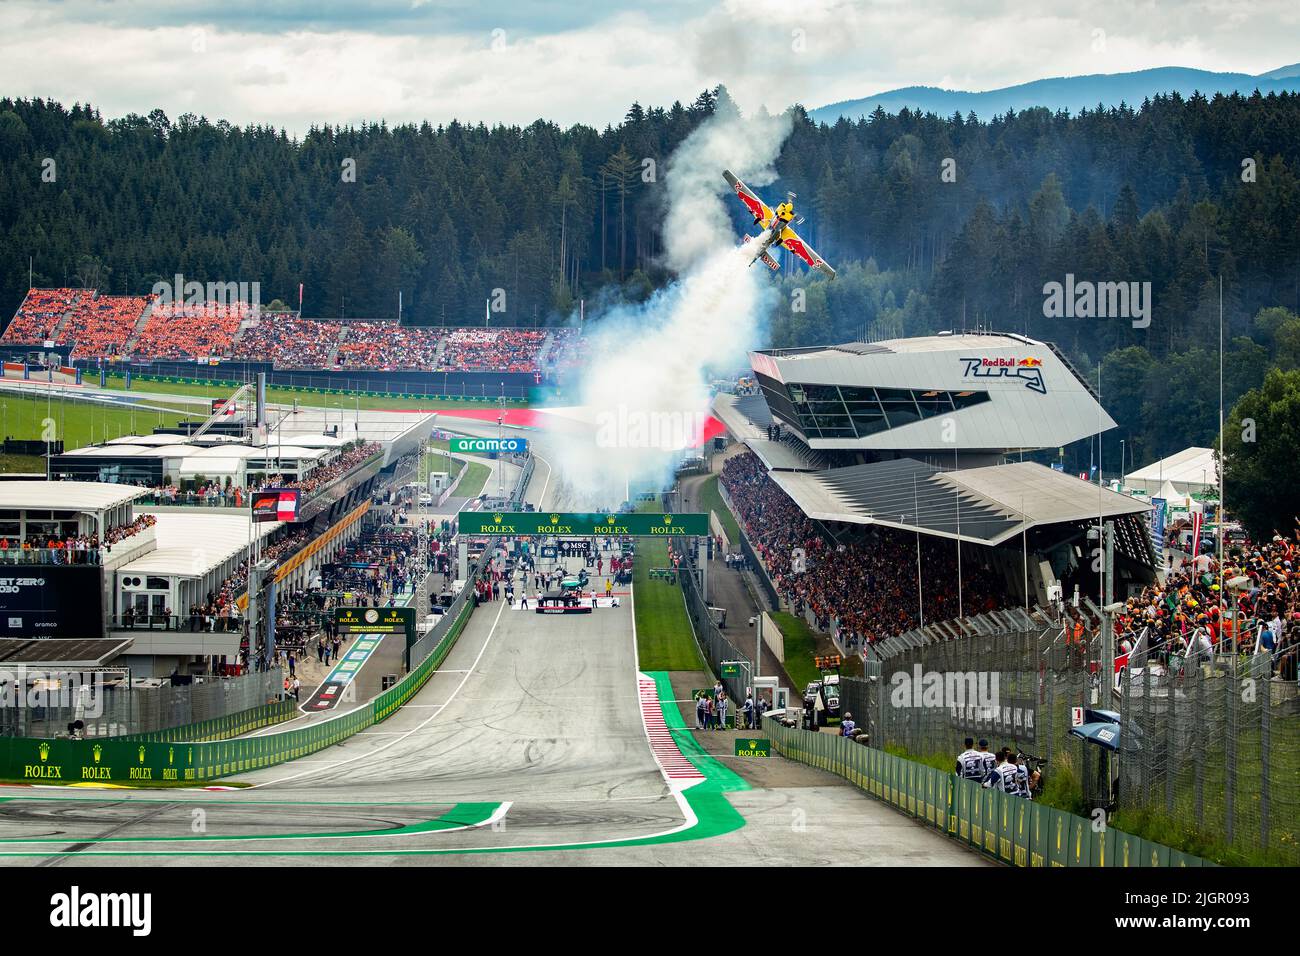 Spectacle acrobatique avant le départ de l'austriangp dans le circuit Red Bull à Knittelfeld Autriche Styrie F1 2022 Banque D'Images